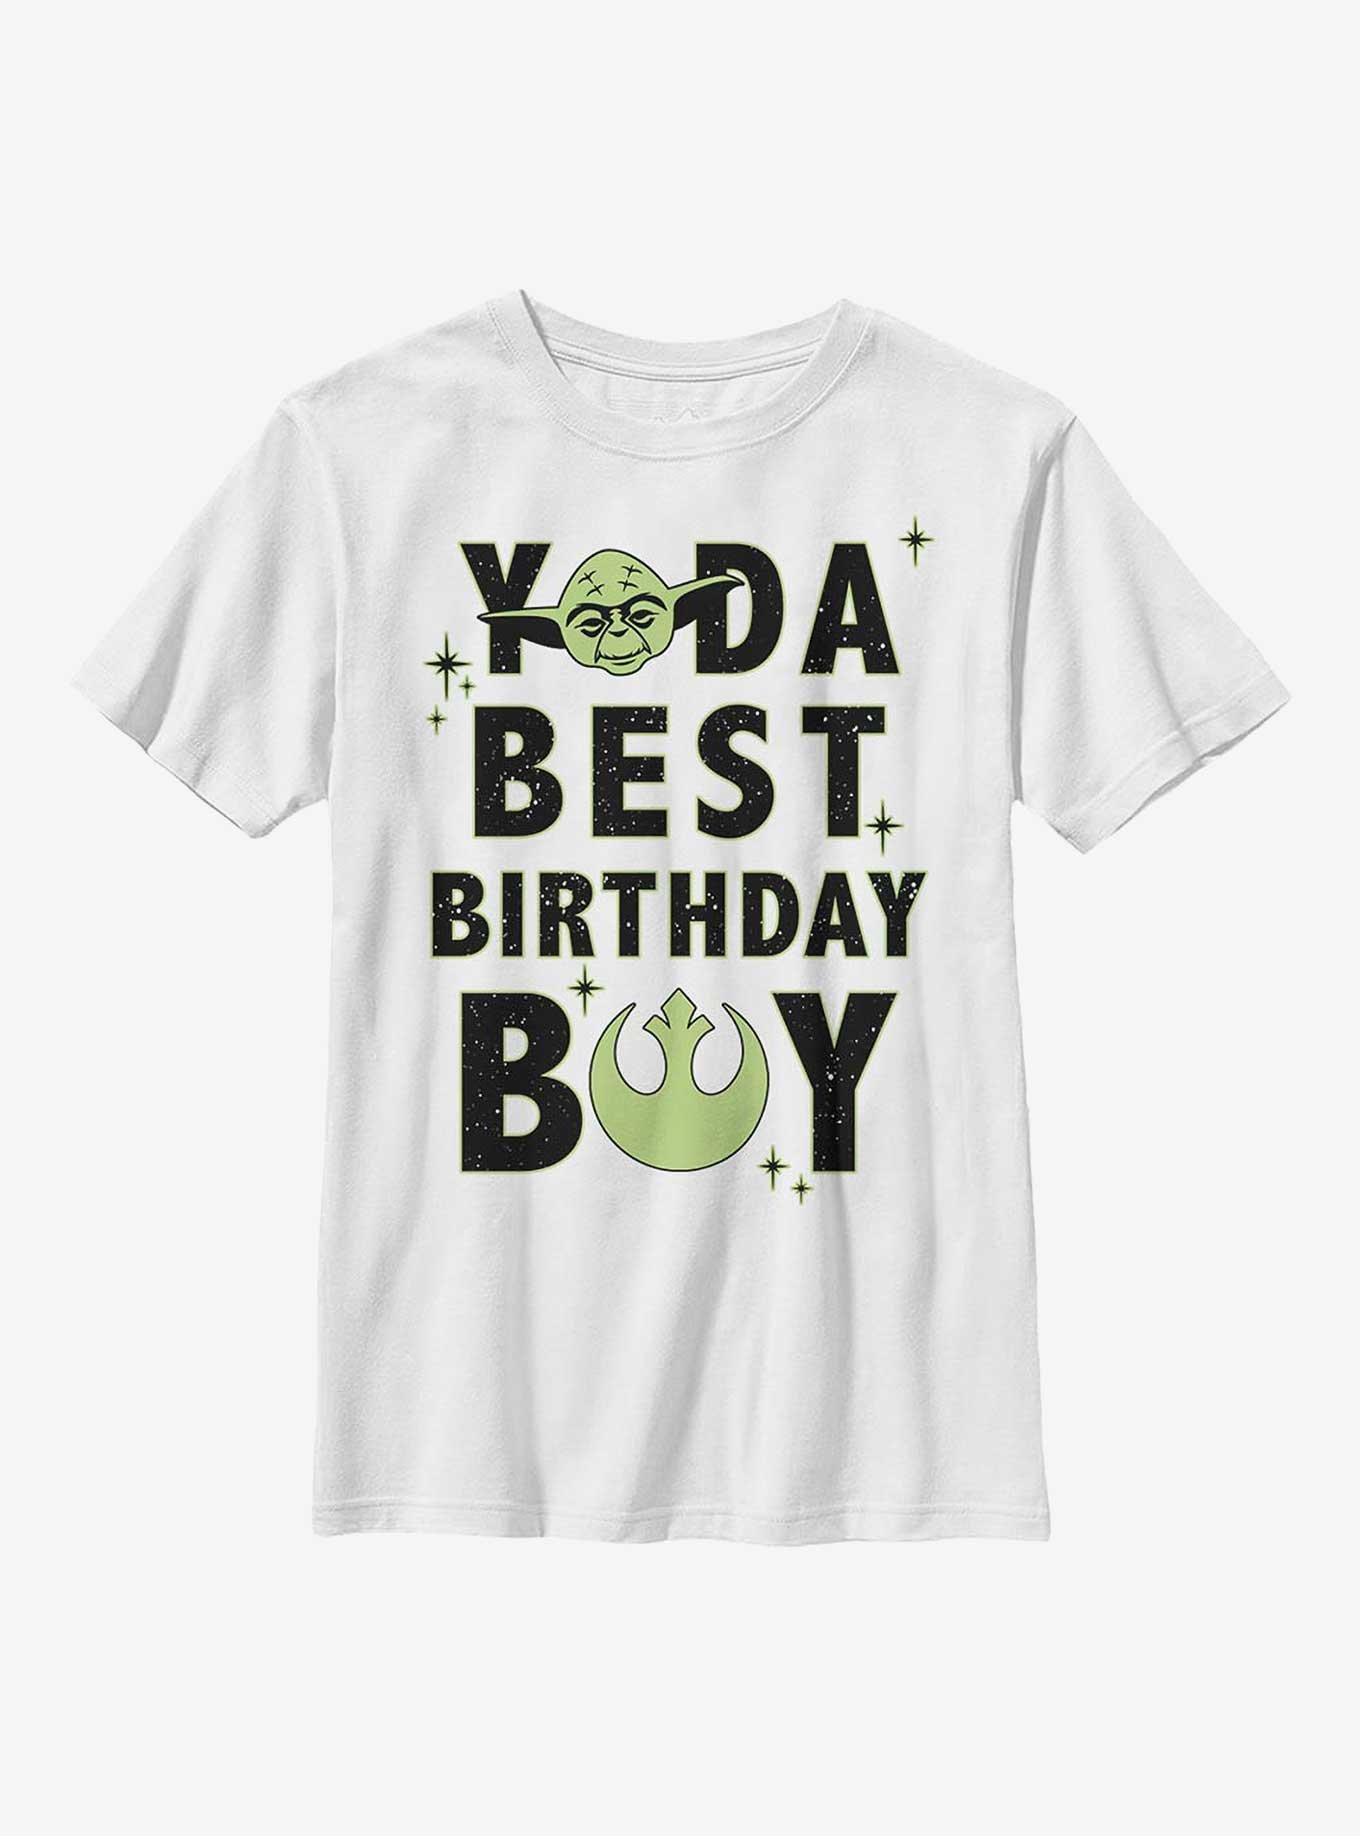 Star Wars Yoda Best Birthday Boy Youth T-Shirt, WHITE, hi-res